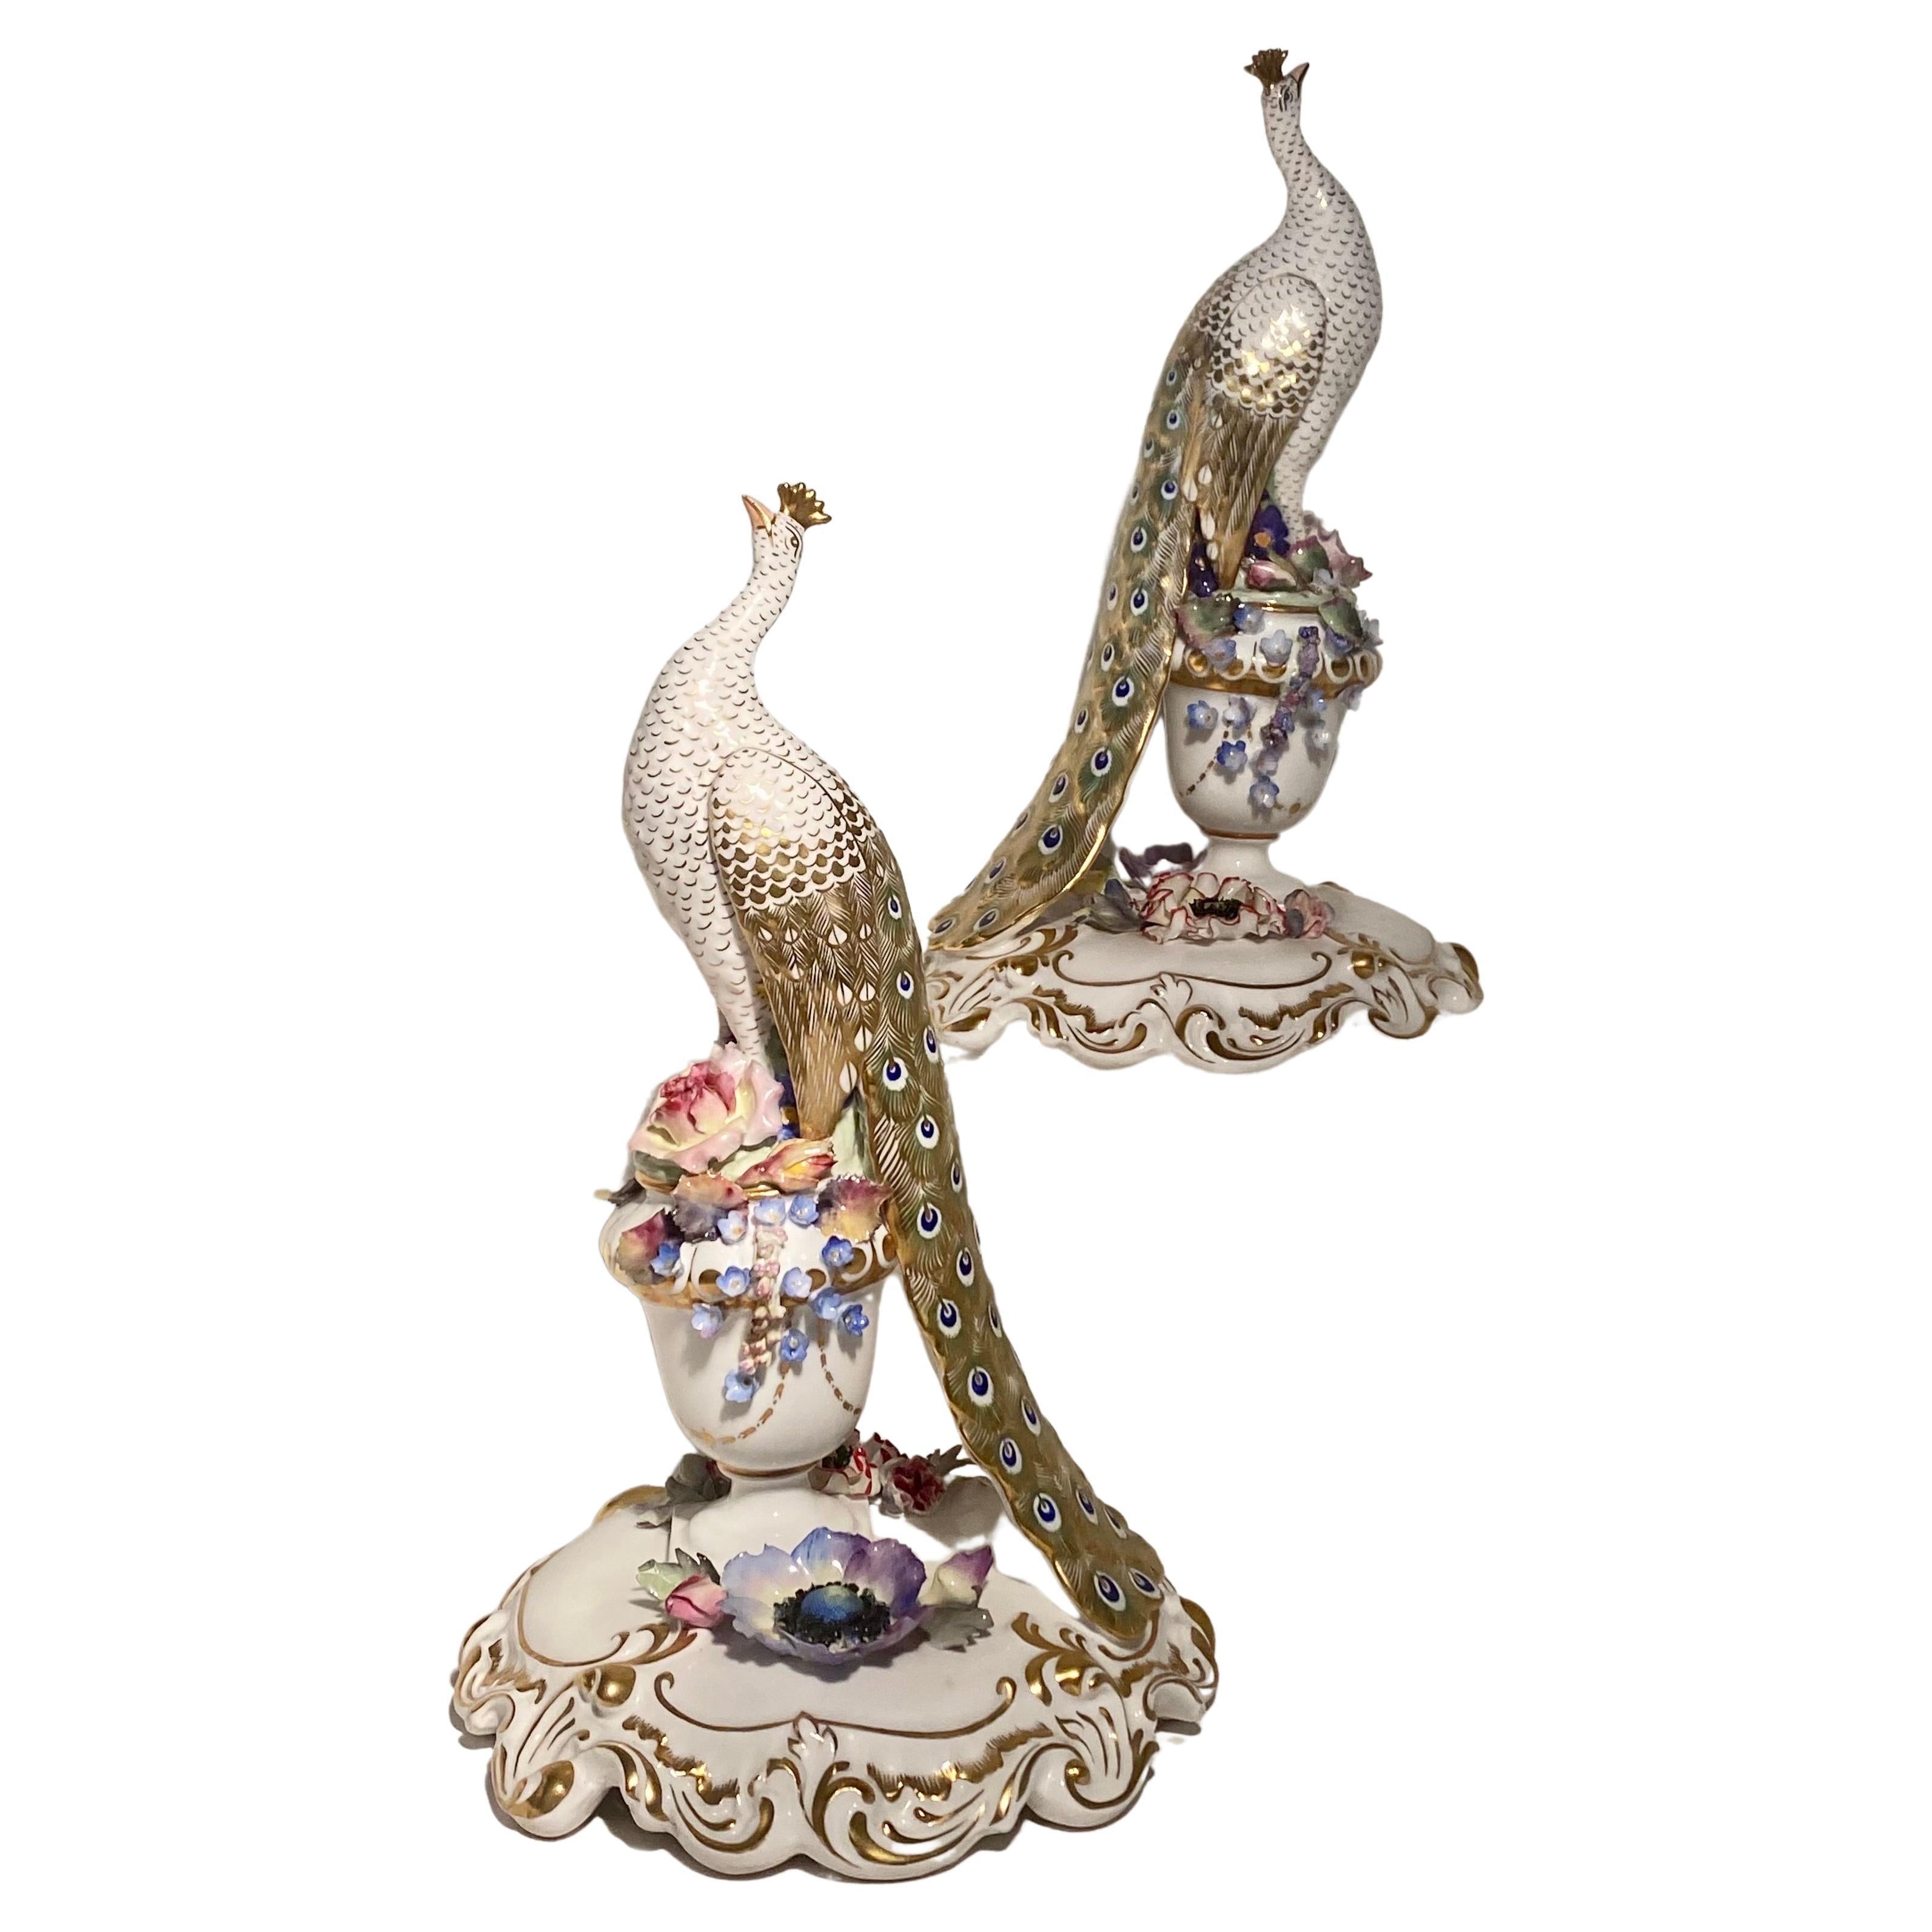 Voici une paire de paons d'une beauté époustouflante, réalisée par Royal. Crown Derby avec les marques indiquant qu'ils ont été fabriqués dans les années 1960. Chaque oiseau est entièrement fait à la main et porte le nom de l'artiste sur la base.